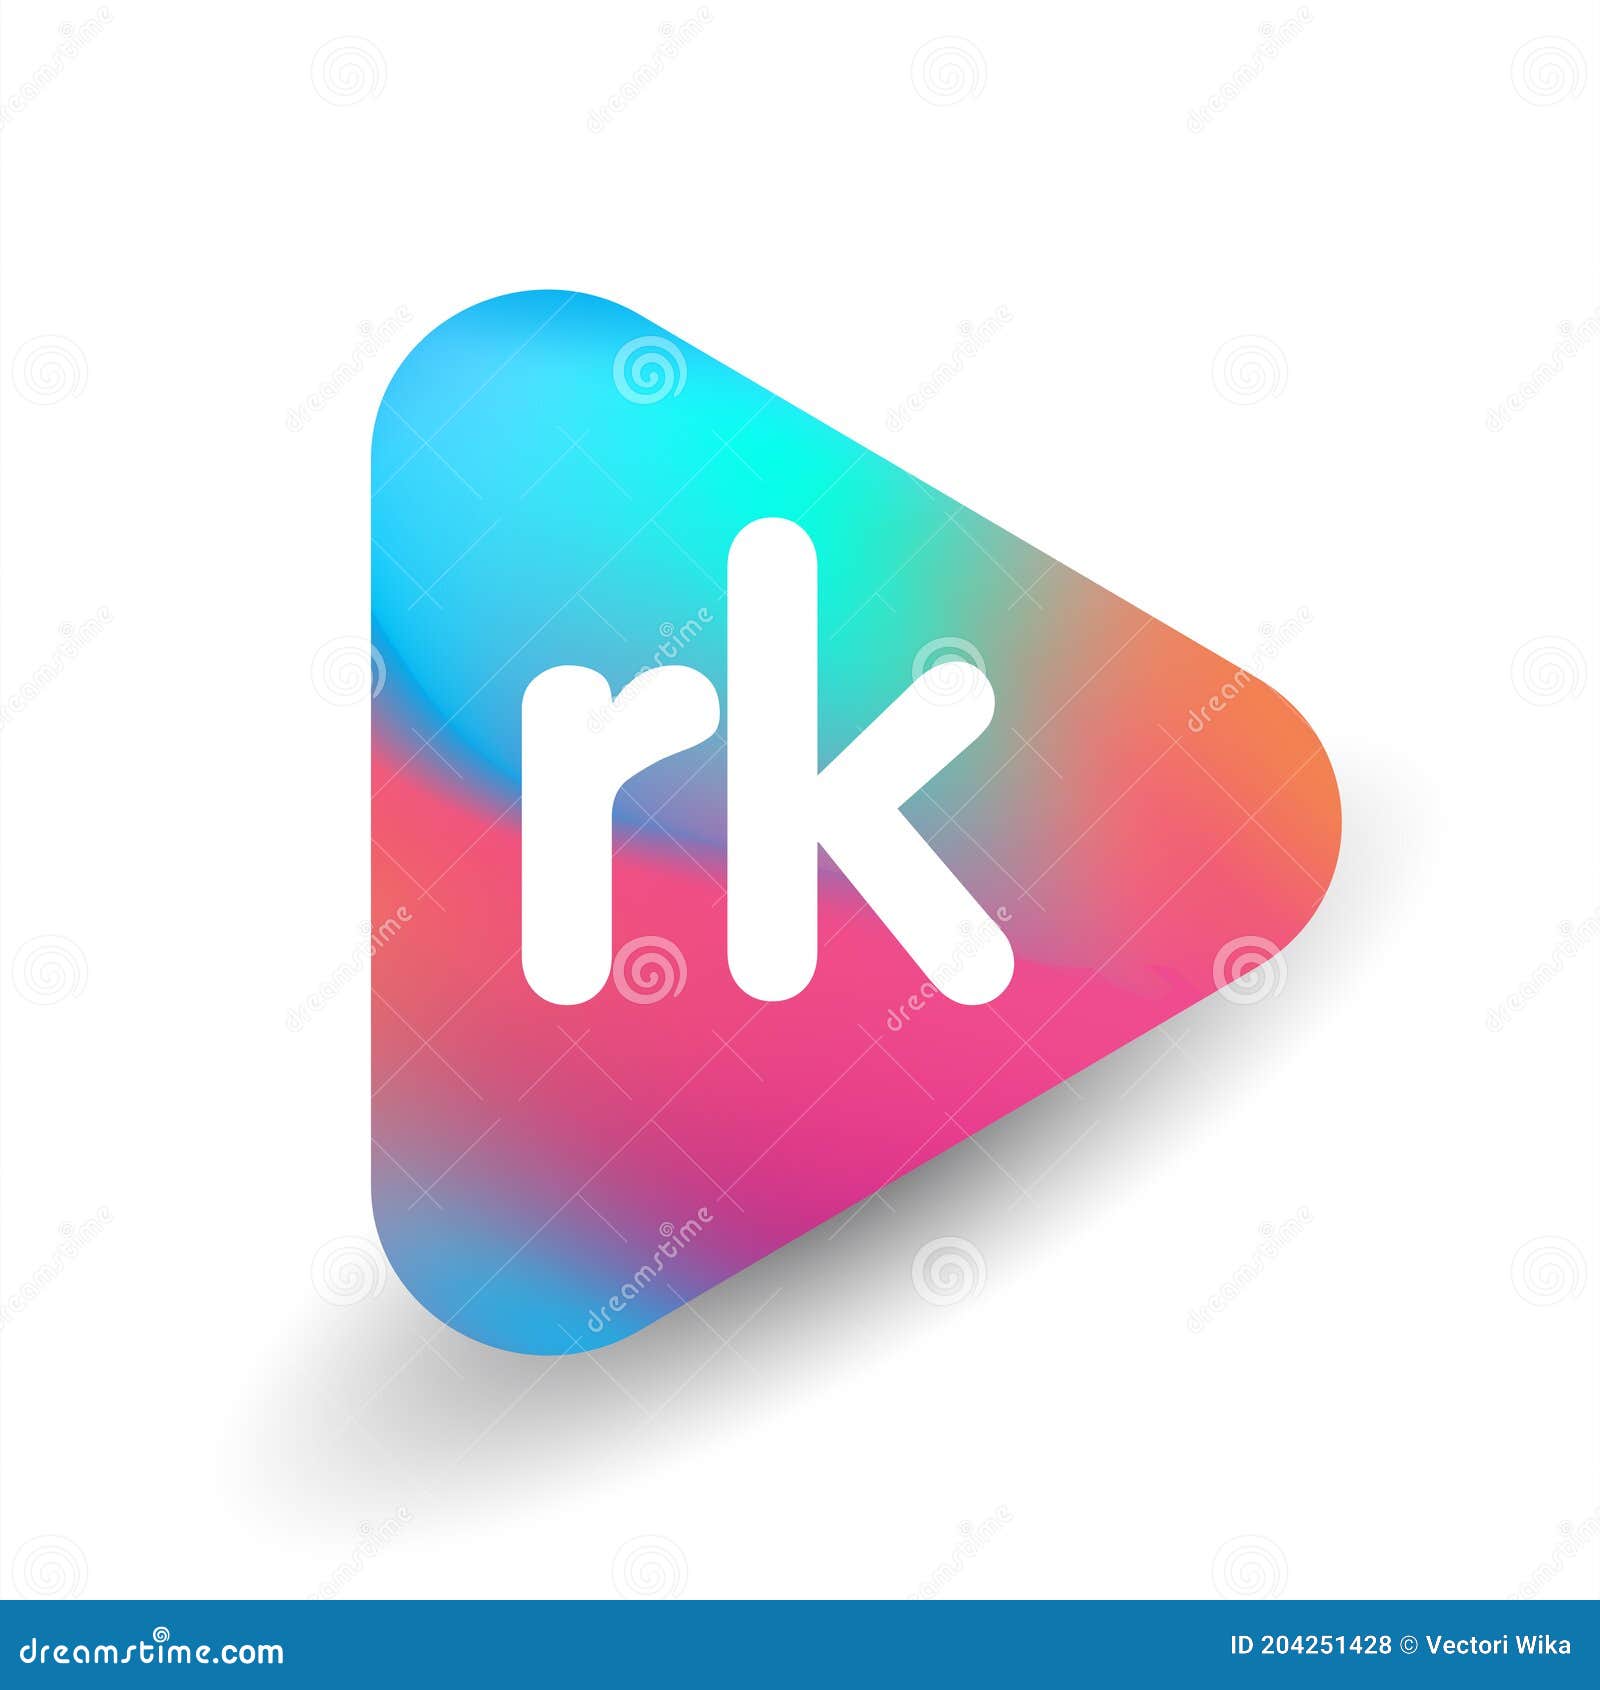 Rk Logo PNG Transparent Images Free Download | Vector Files | Pngtree